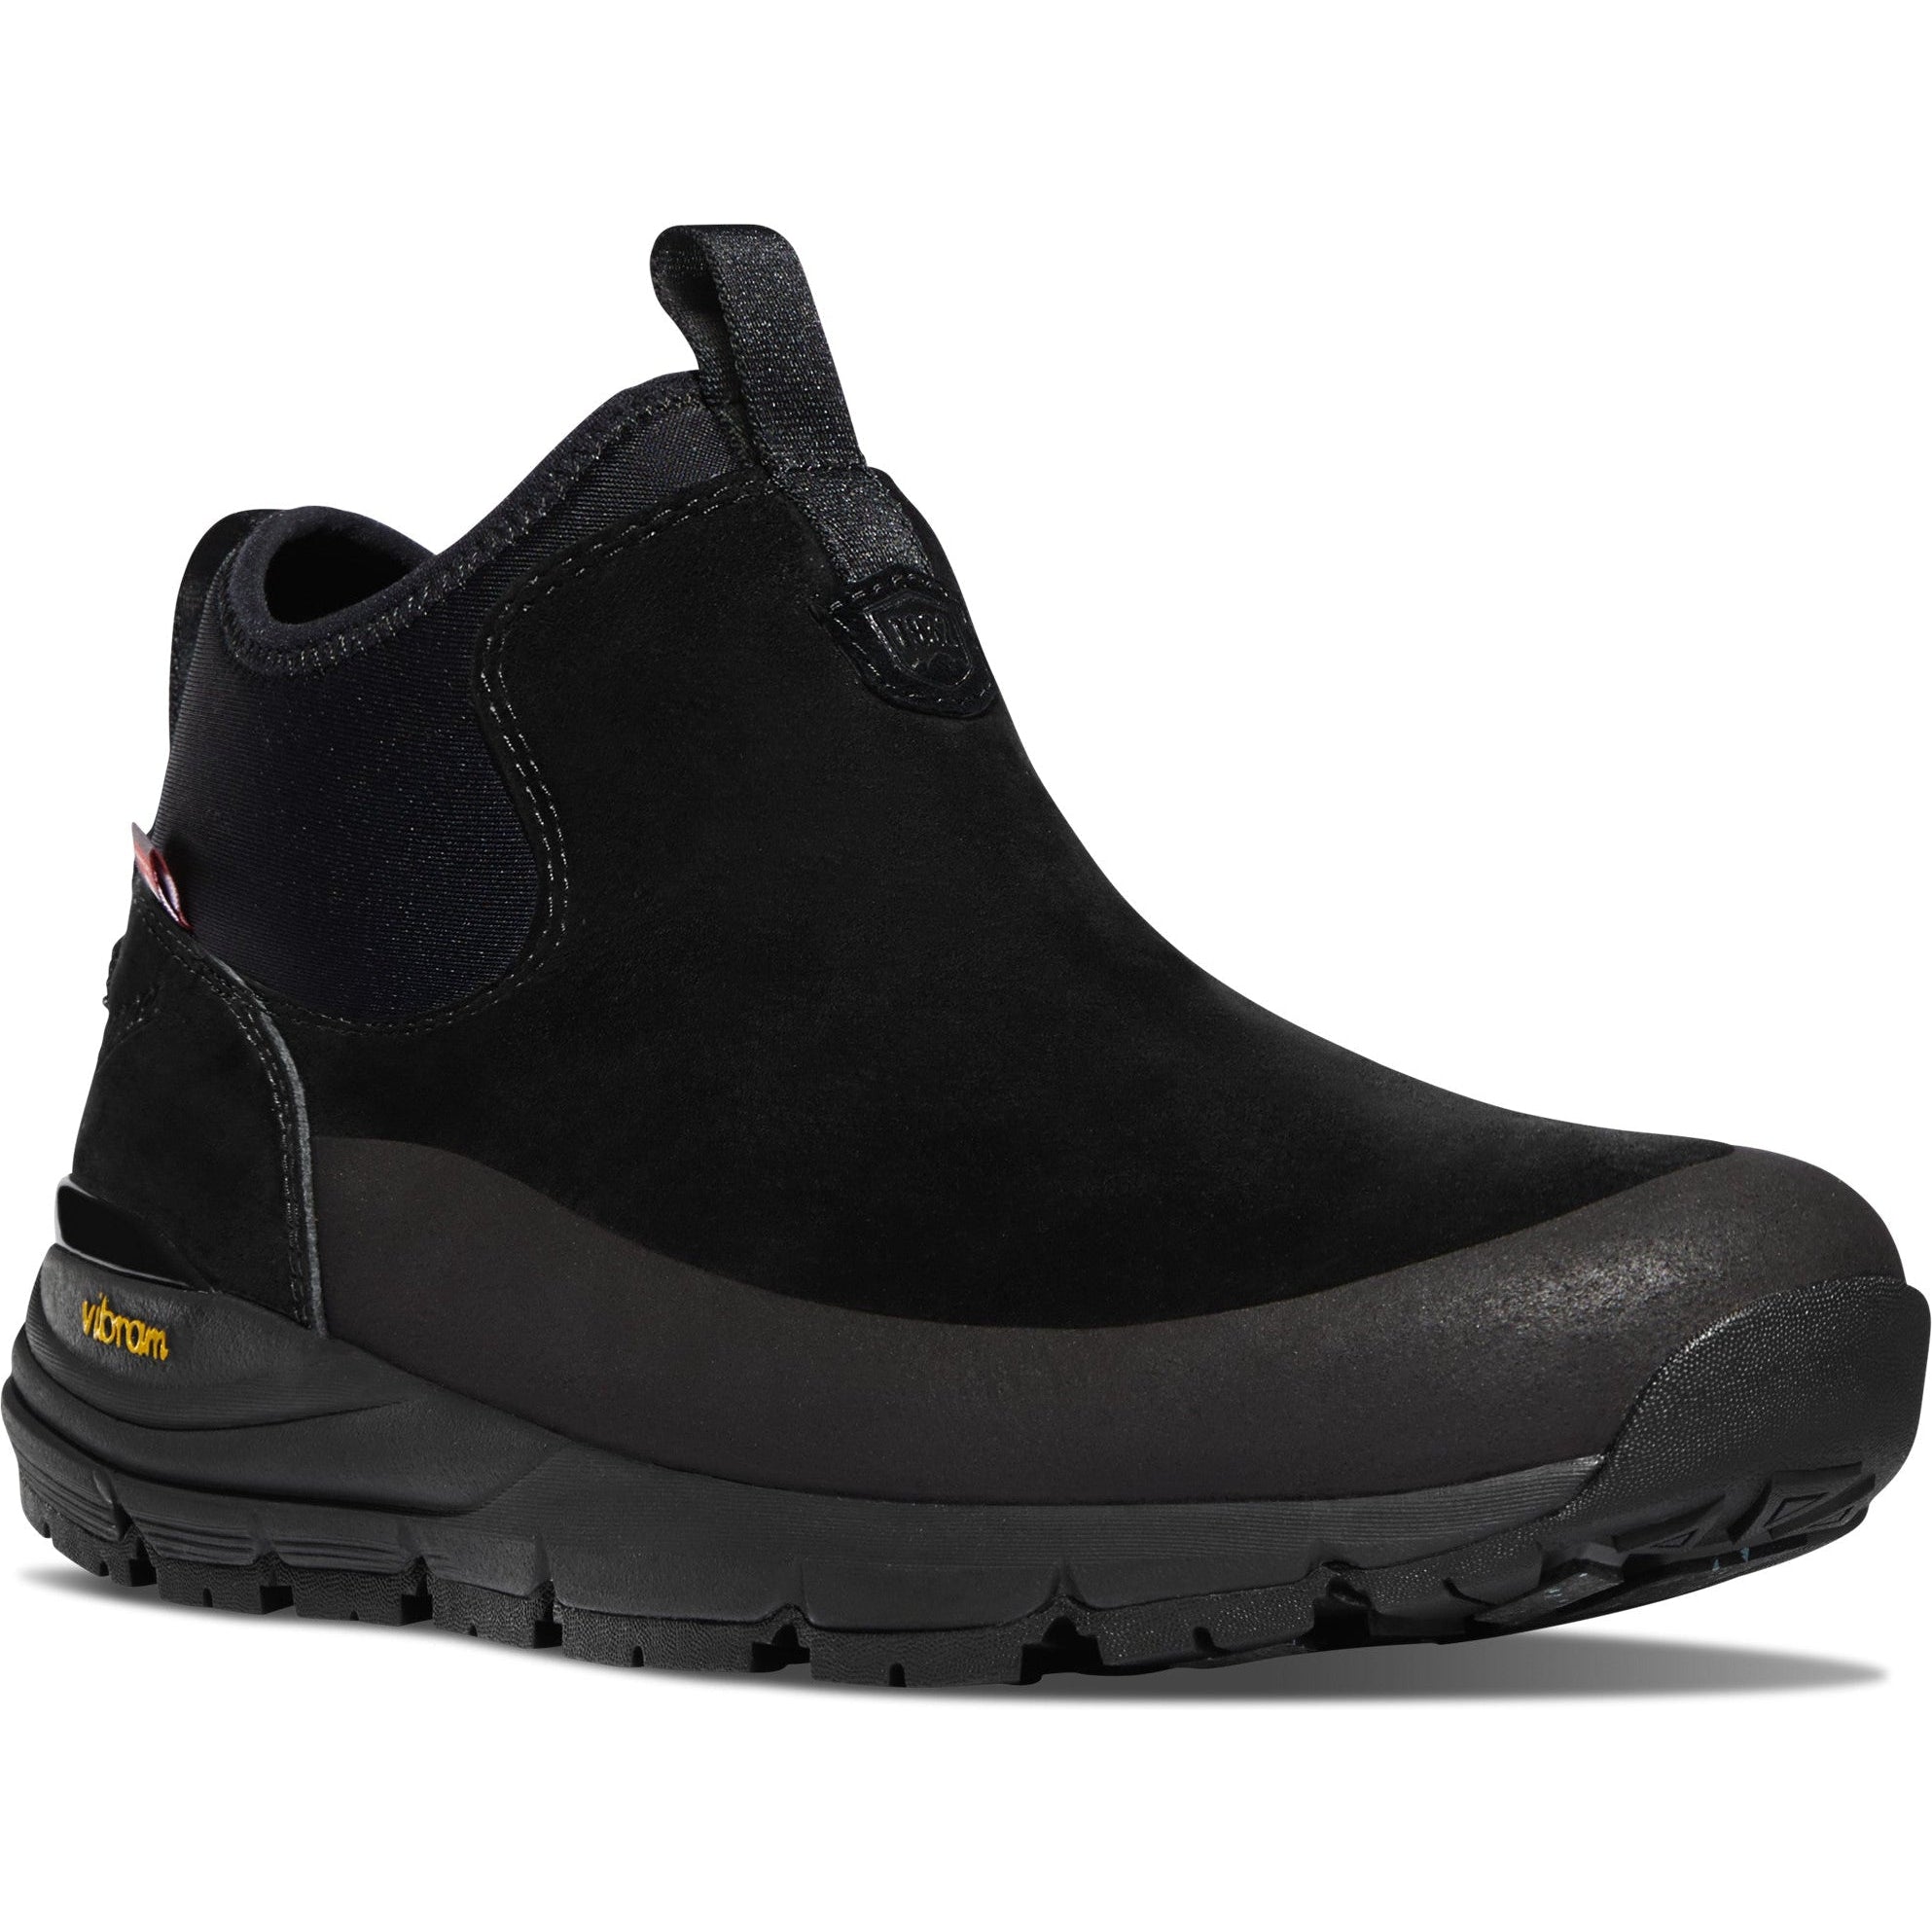 Danner Men's Arctic 600 5" WP 200G Chelsea Hiking Boot - Black - 67372 7 / Medium / Black - Overlook Boots